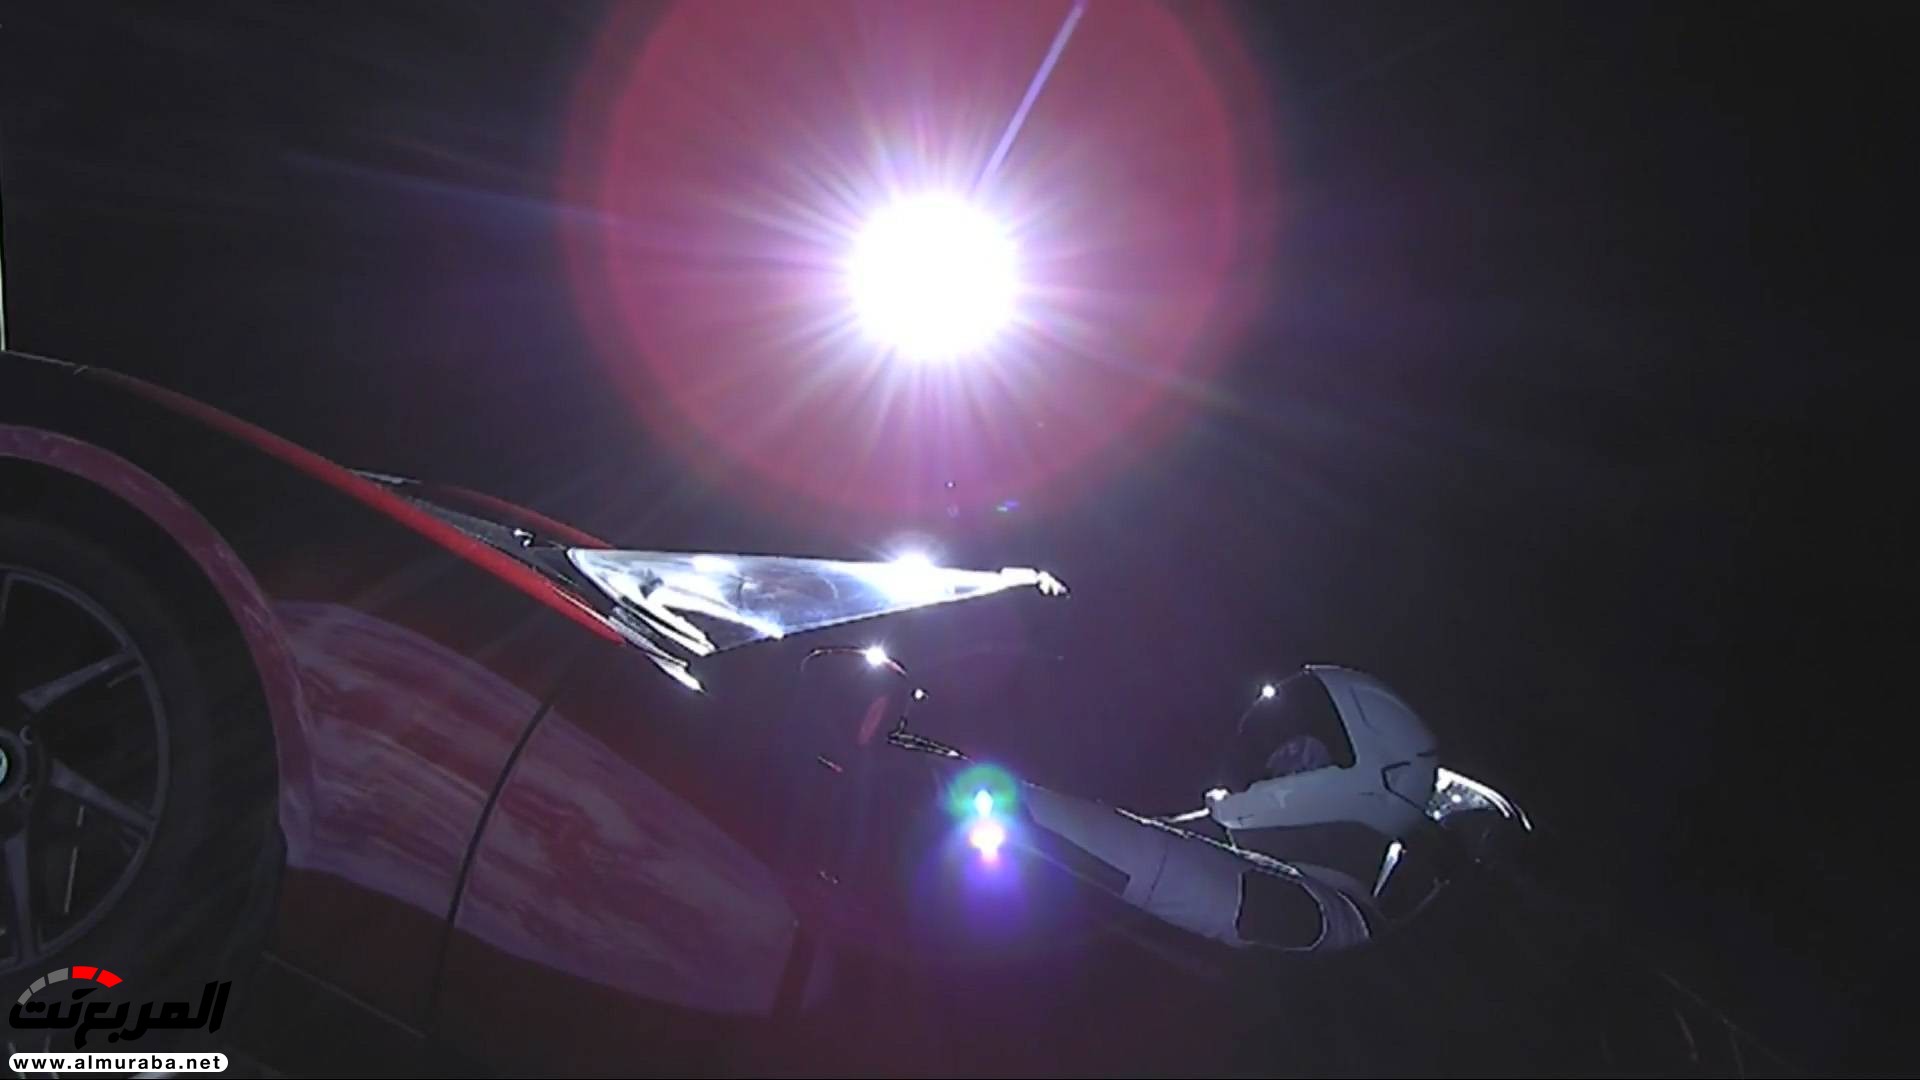 "بالفيديو والصور" إيلون ماسك يطلق تيسلا رودستر إلى المريخ في أقوى صاروخ بالعالم 11